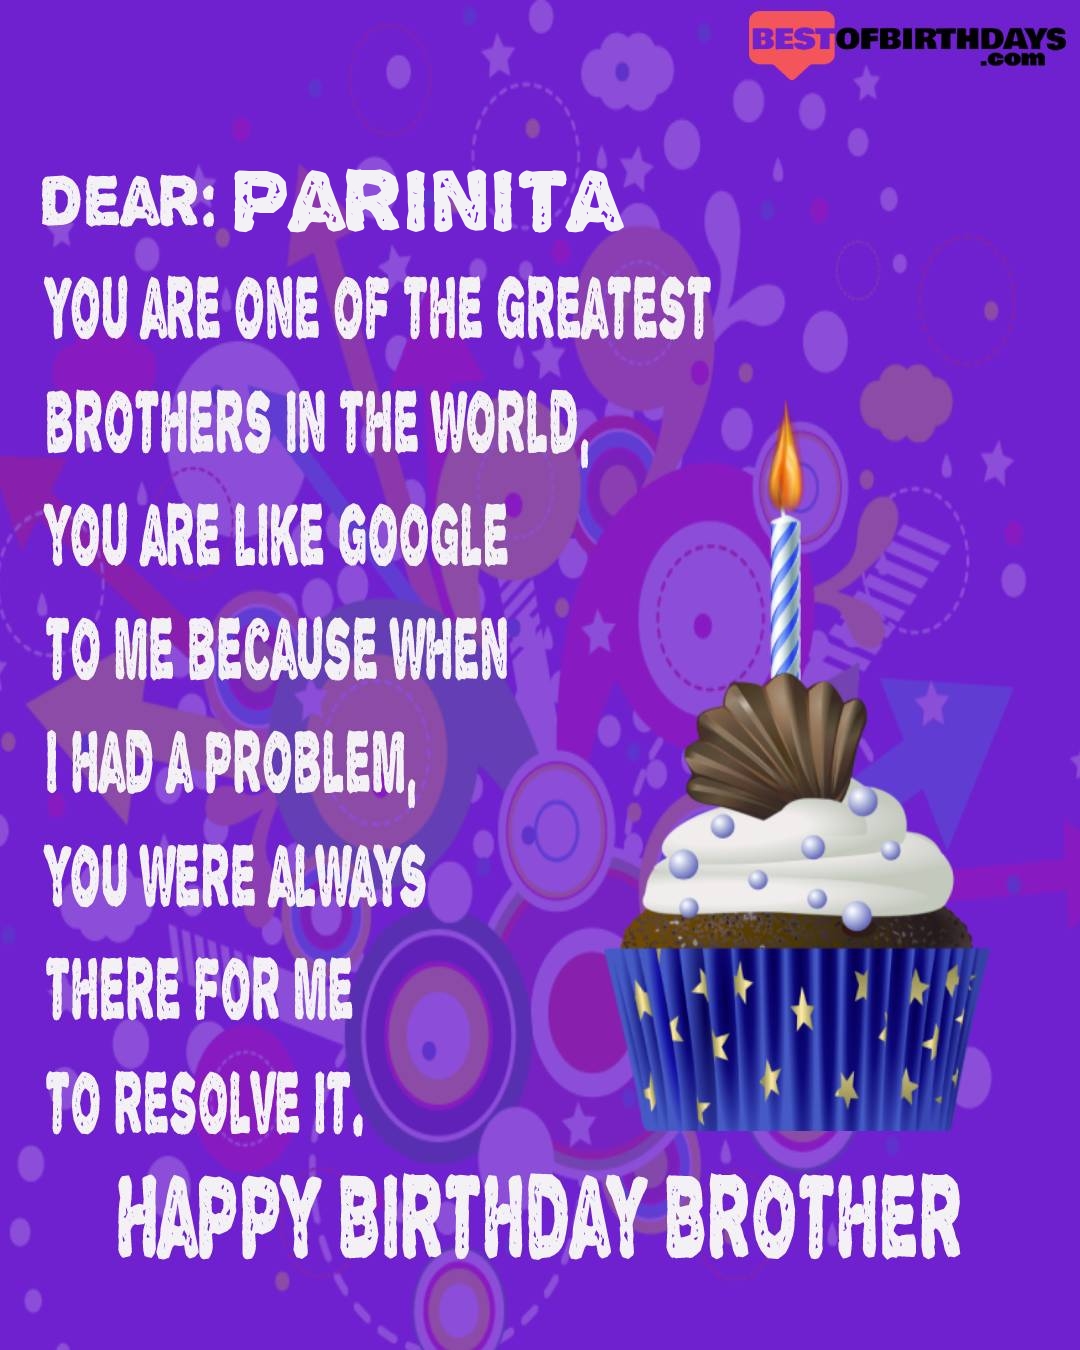 Happy birthday parinita bhai brother bro